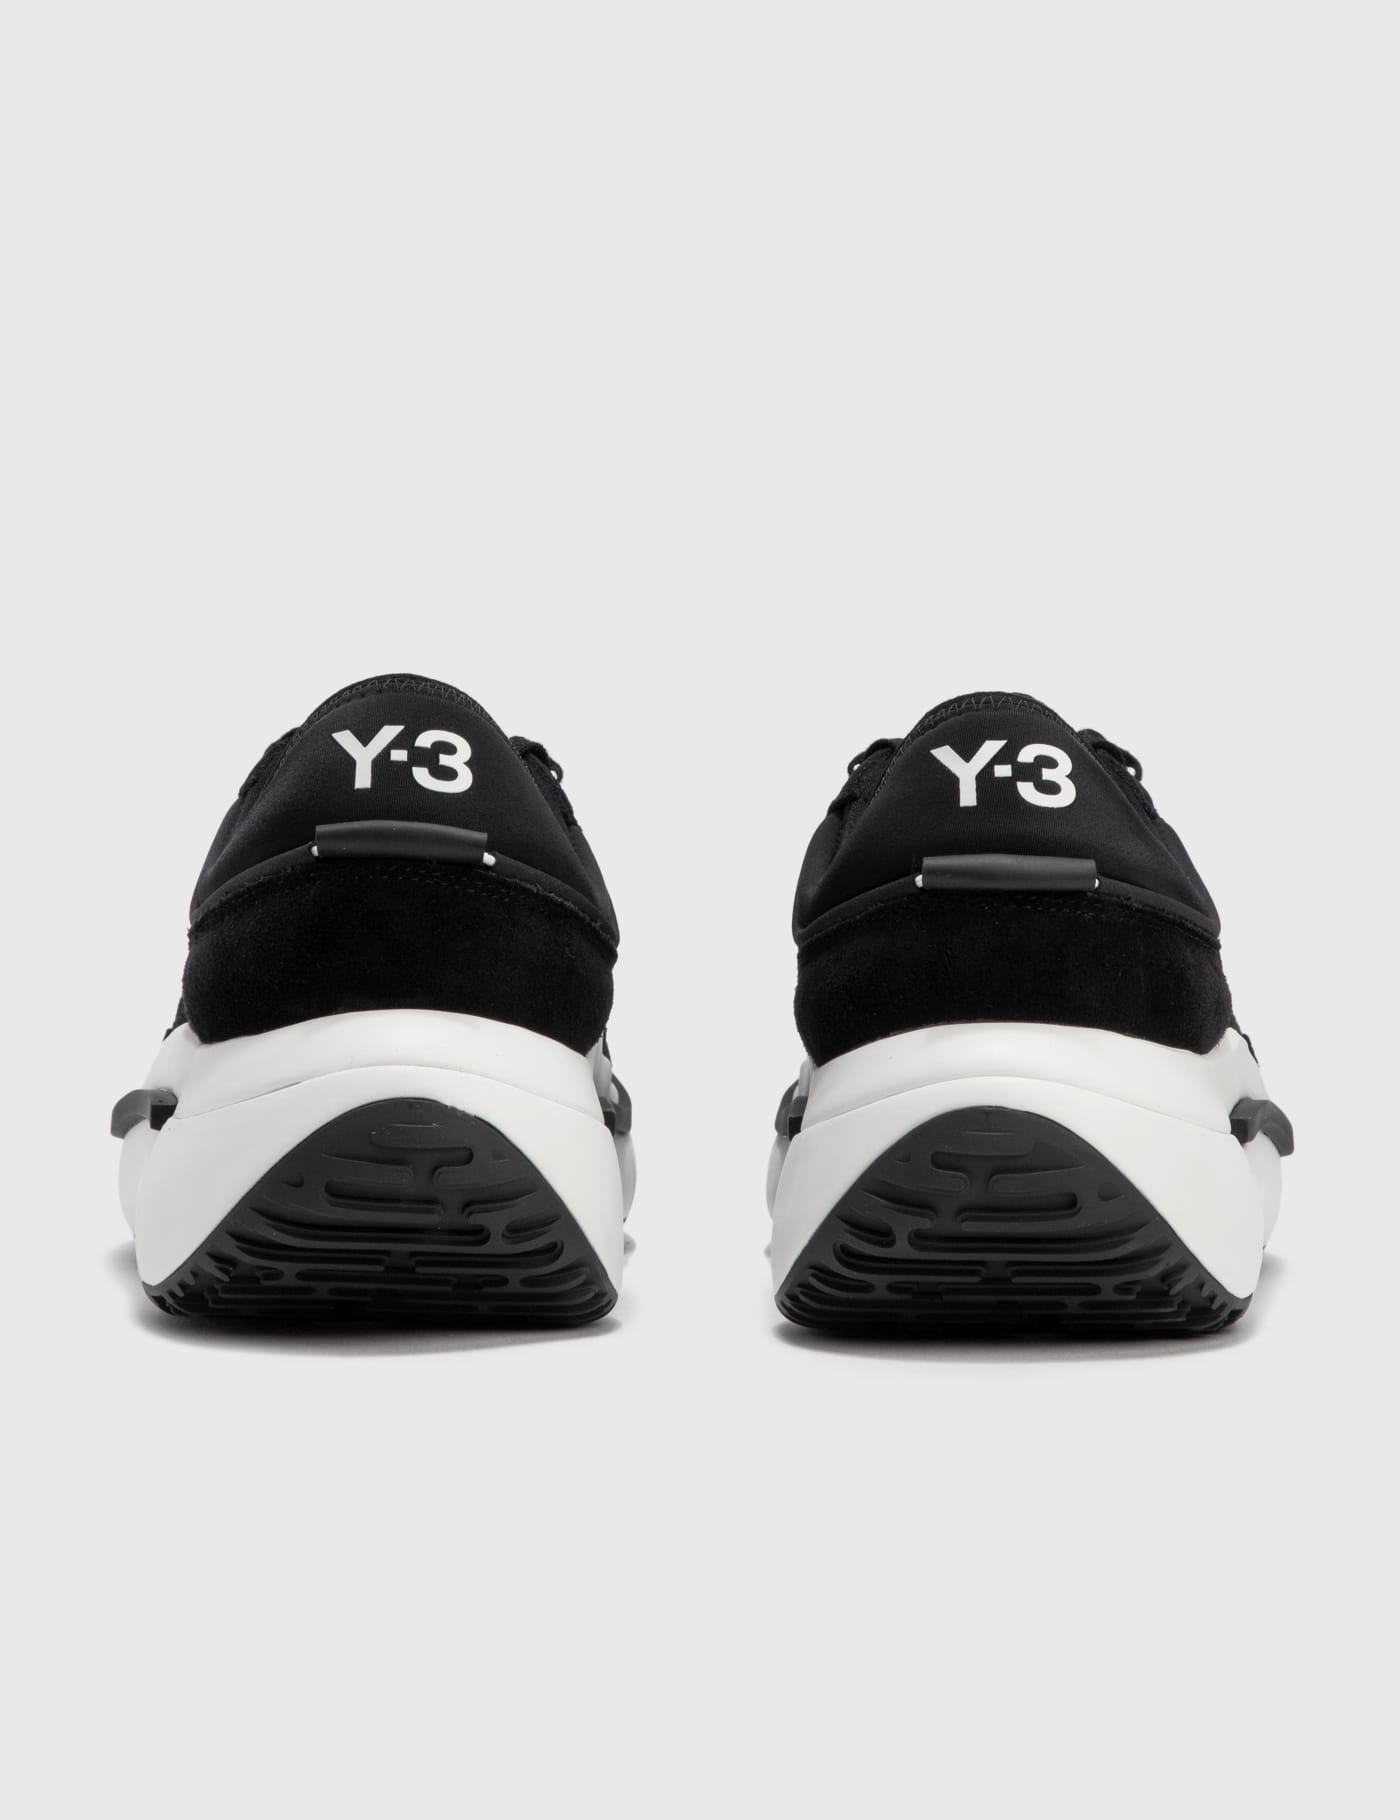 Y   Y Ajatu Run Sneaker   HBX   HYPEBEAST 為您搜羅全球潮流時尚品牌